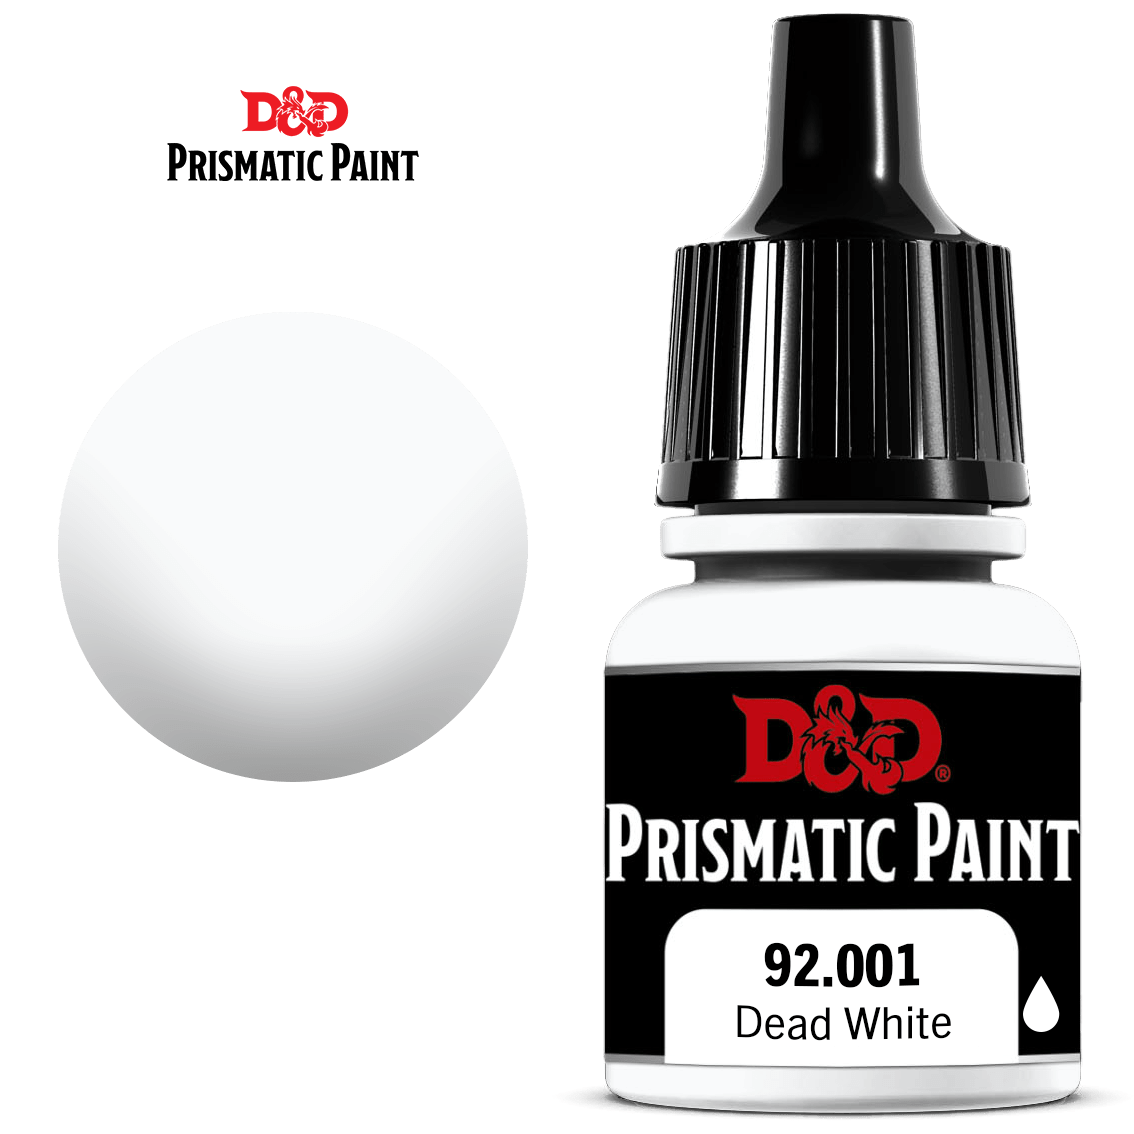 D&D Prismatic Paint: Dead White